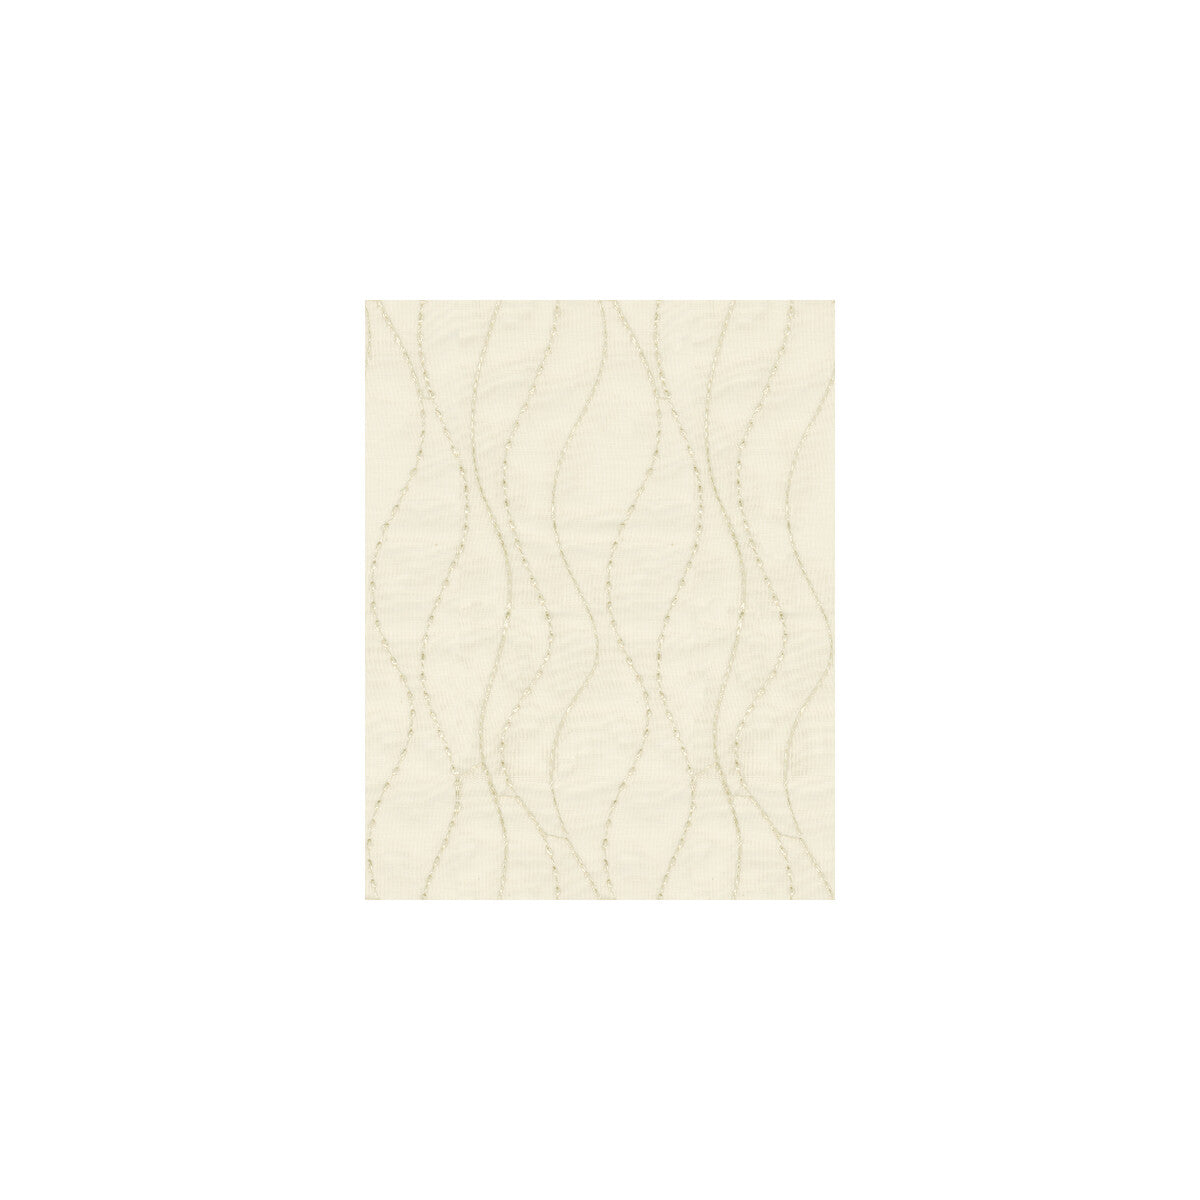 Kravet Basics fabric in 9804-116 color - pattern 9804.116.0 - by Kravet Basics